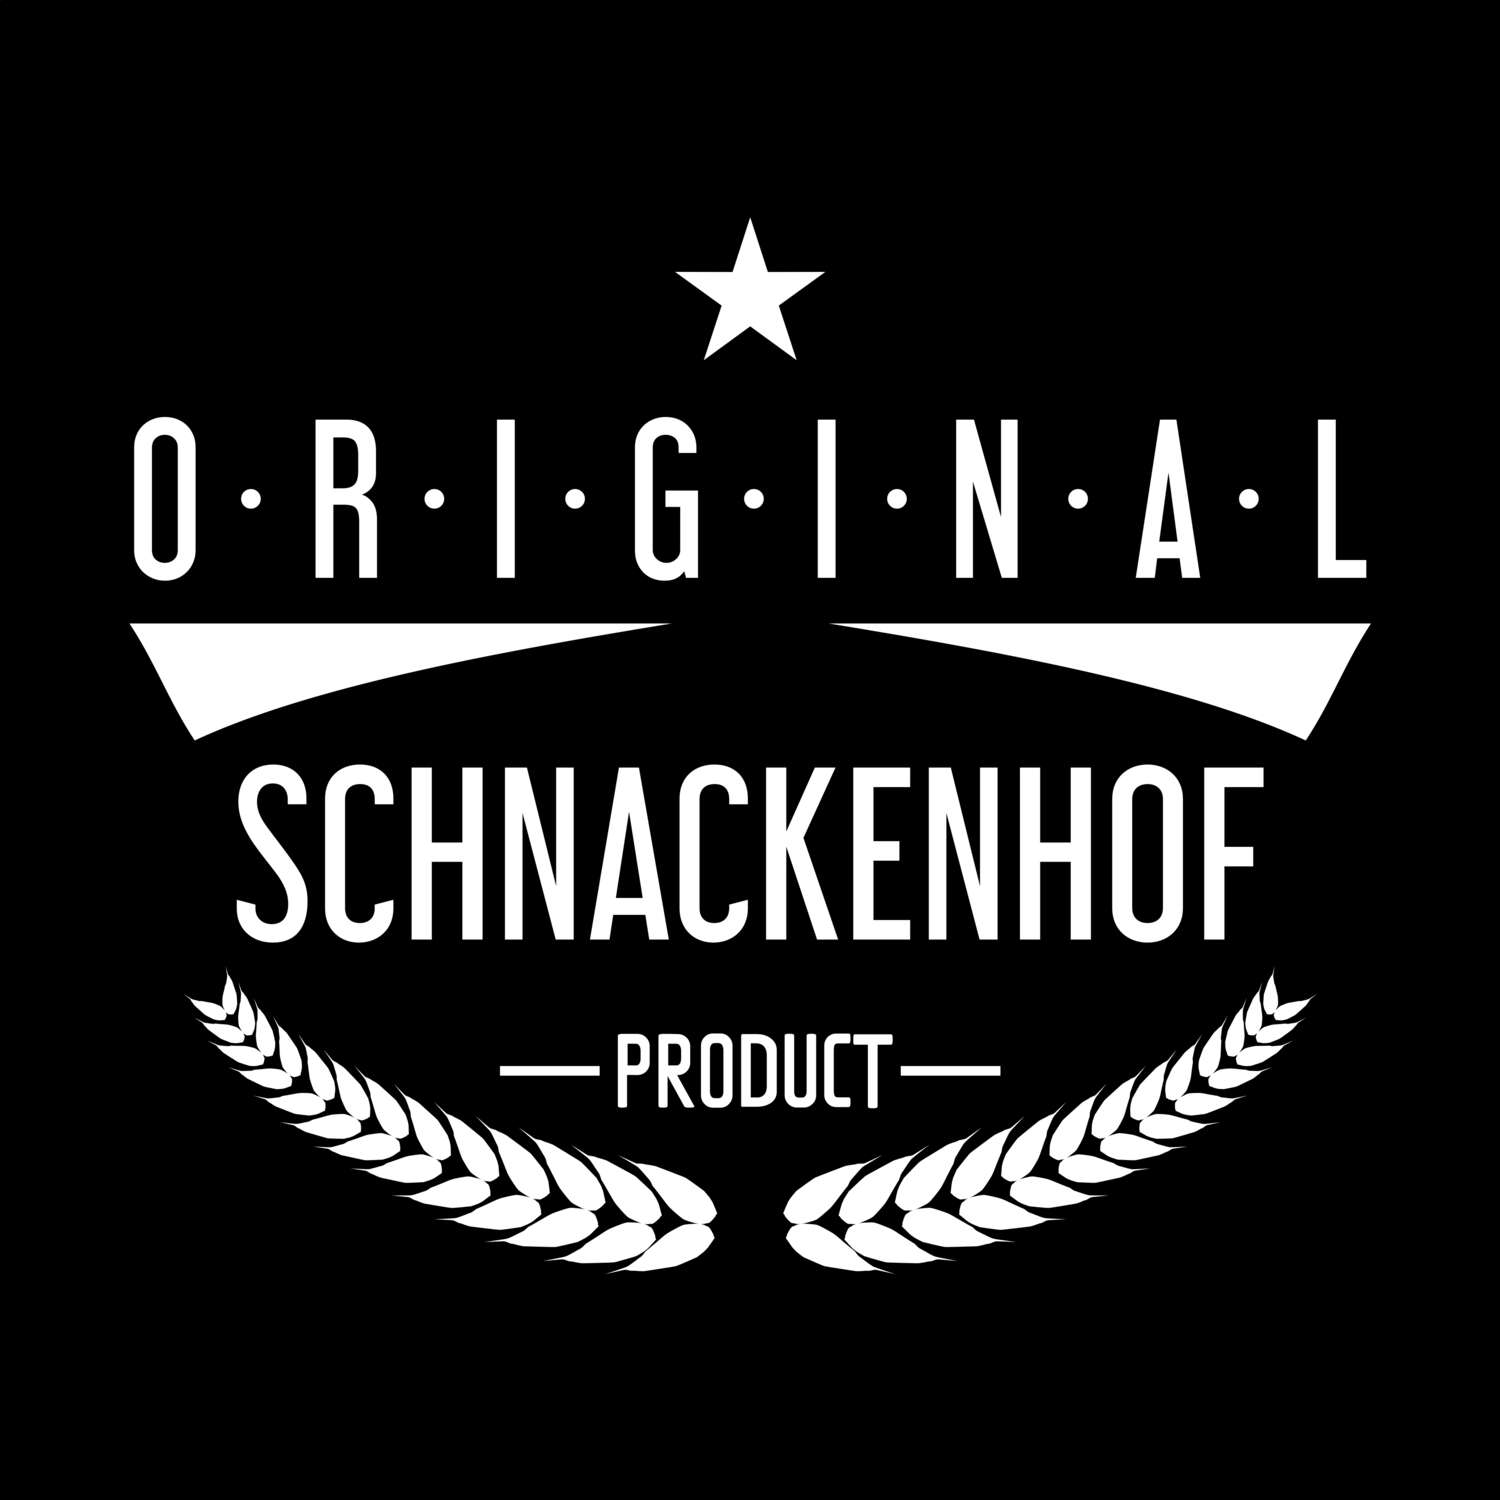 Schnackenhof T-Shirt »Original Product«